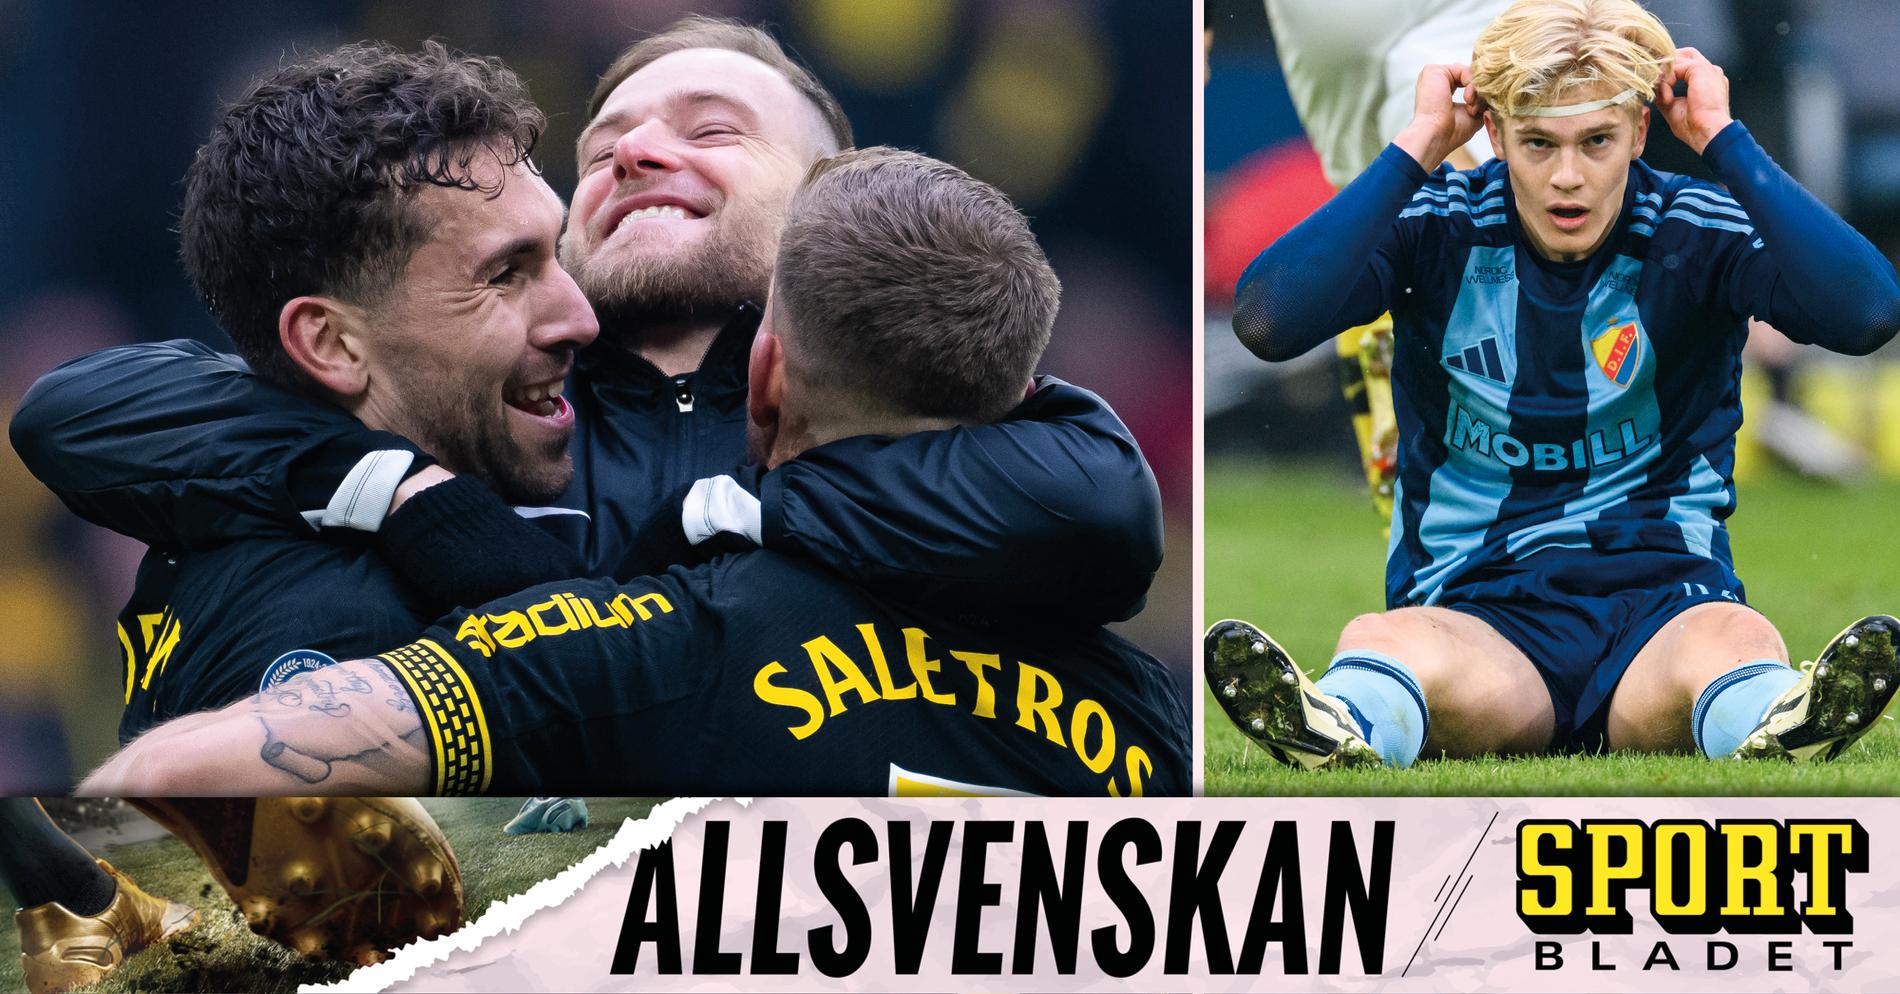 Sportbladet allsvenskan live: Allt om derbyt mellan AIK och Djurgården